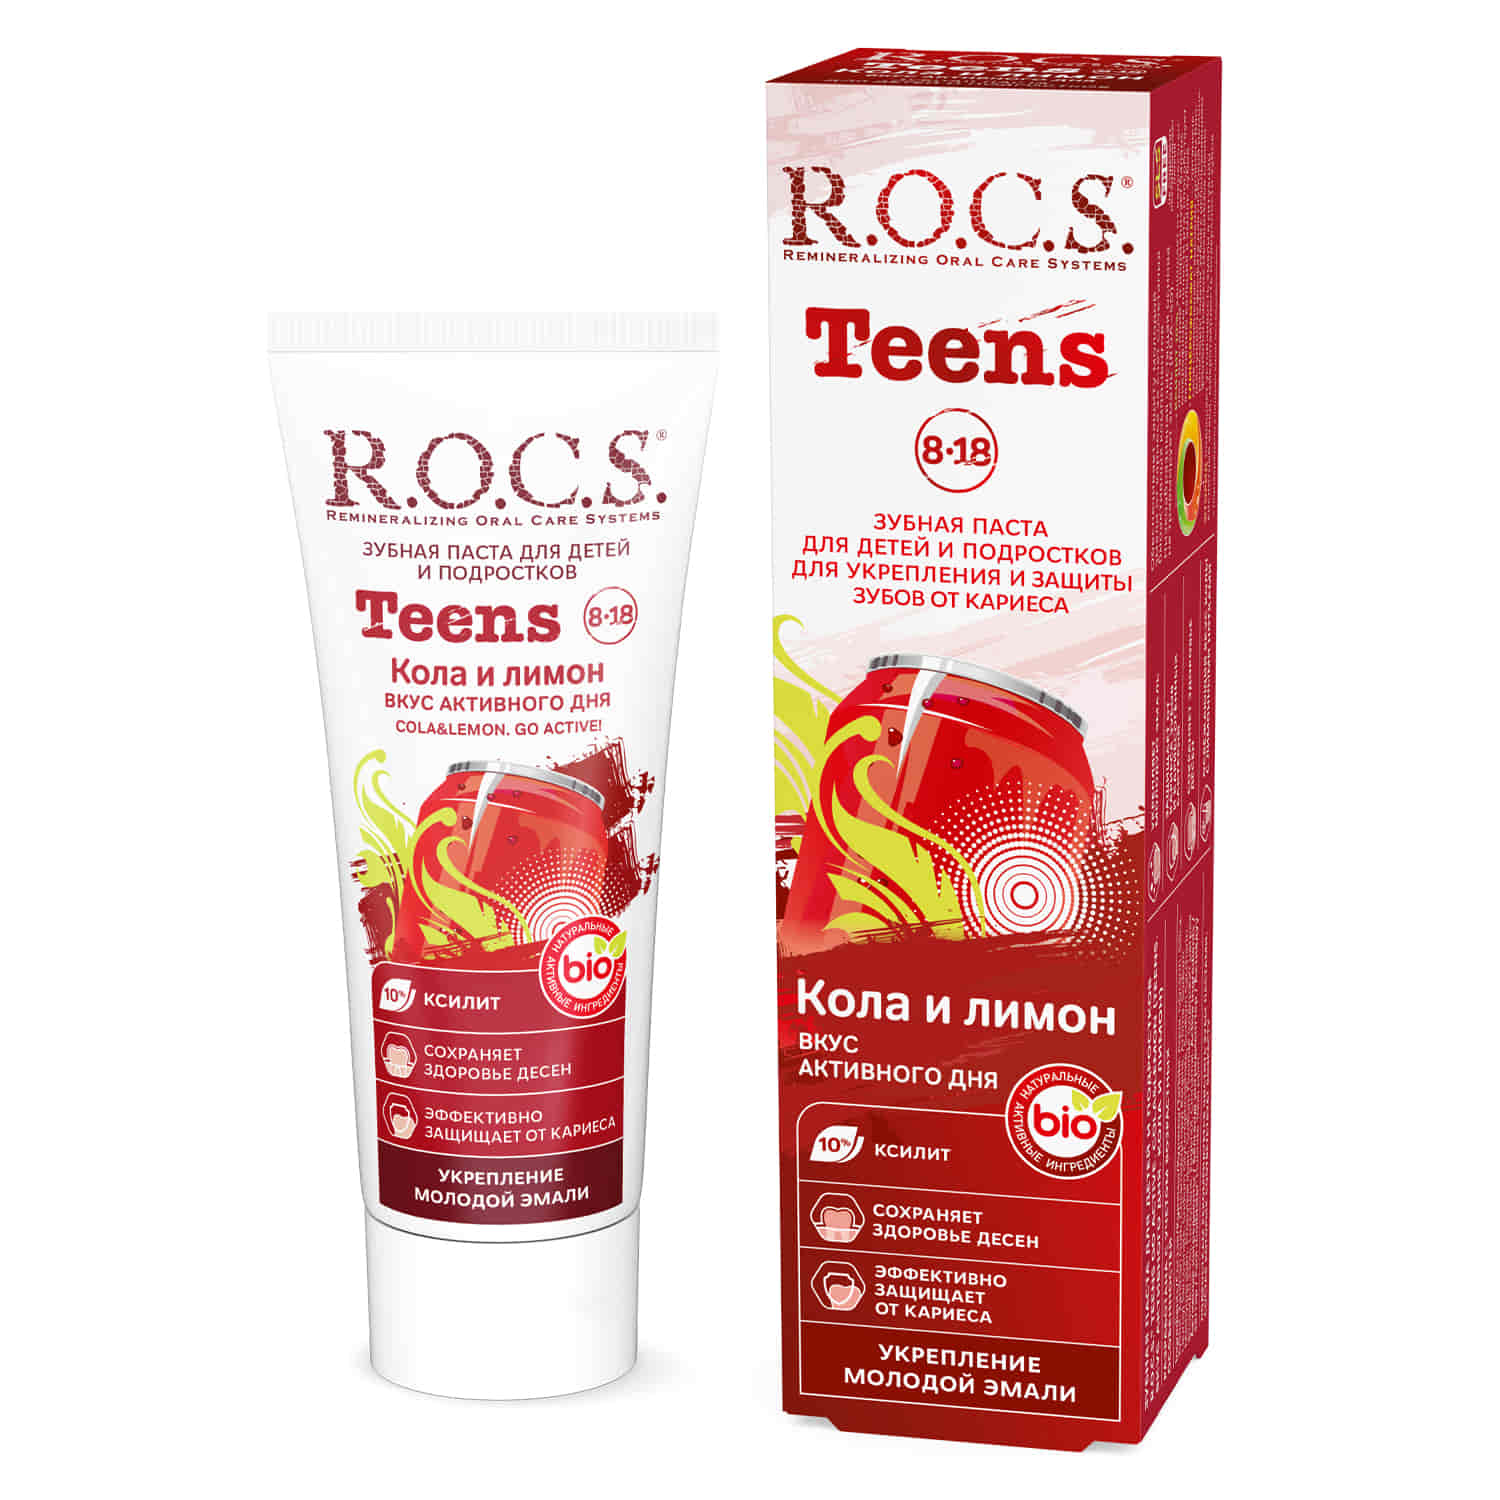 Зубная паста ROCS Вкус активного дня (от 8 до 18 лет) зубная паста r o c s teens со вкусом земляники 74 мл